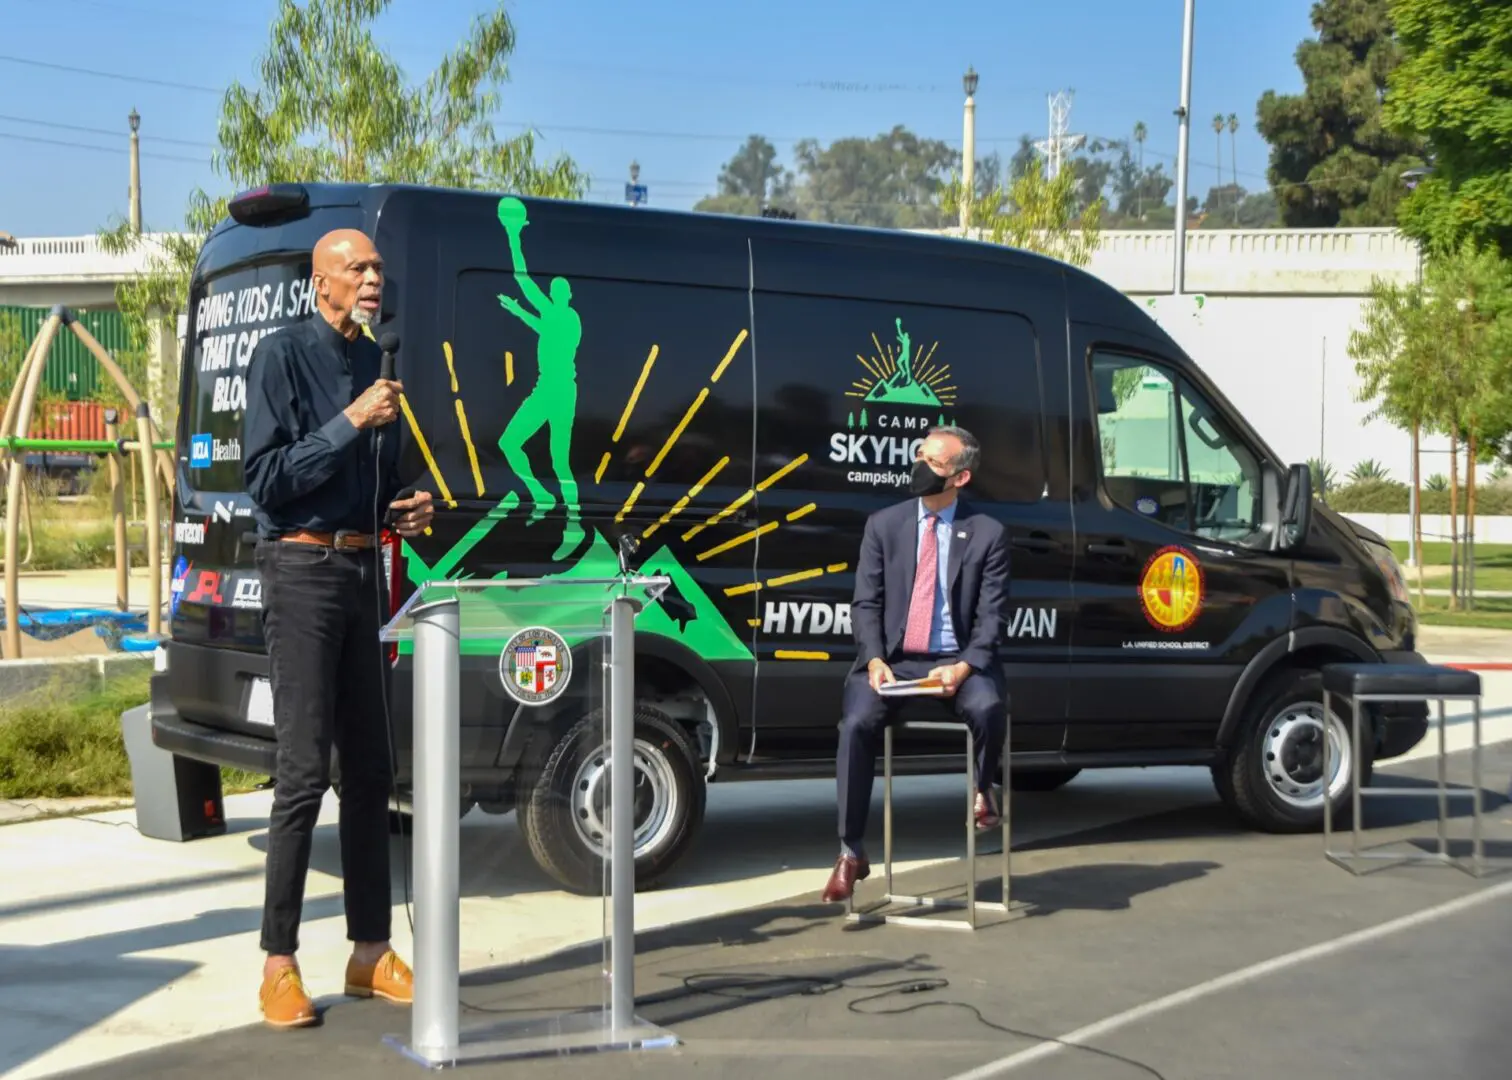 Groundbreaking Skyhook Eco-Van Program brings Mobile Classrooms to L.A.’s Kids  - Skyhook Foundation